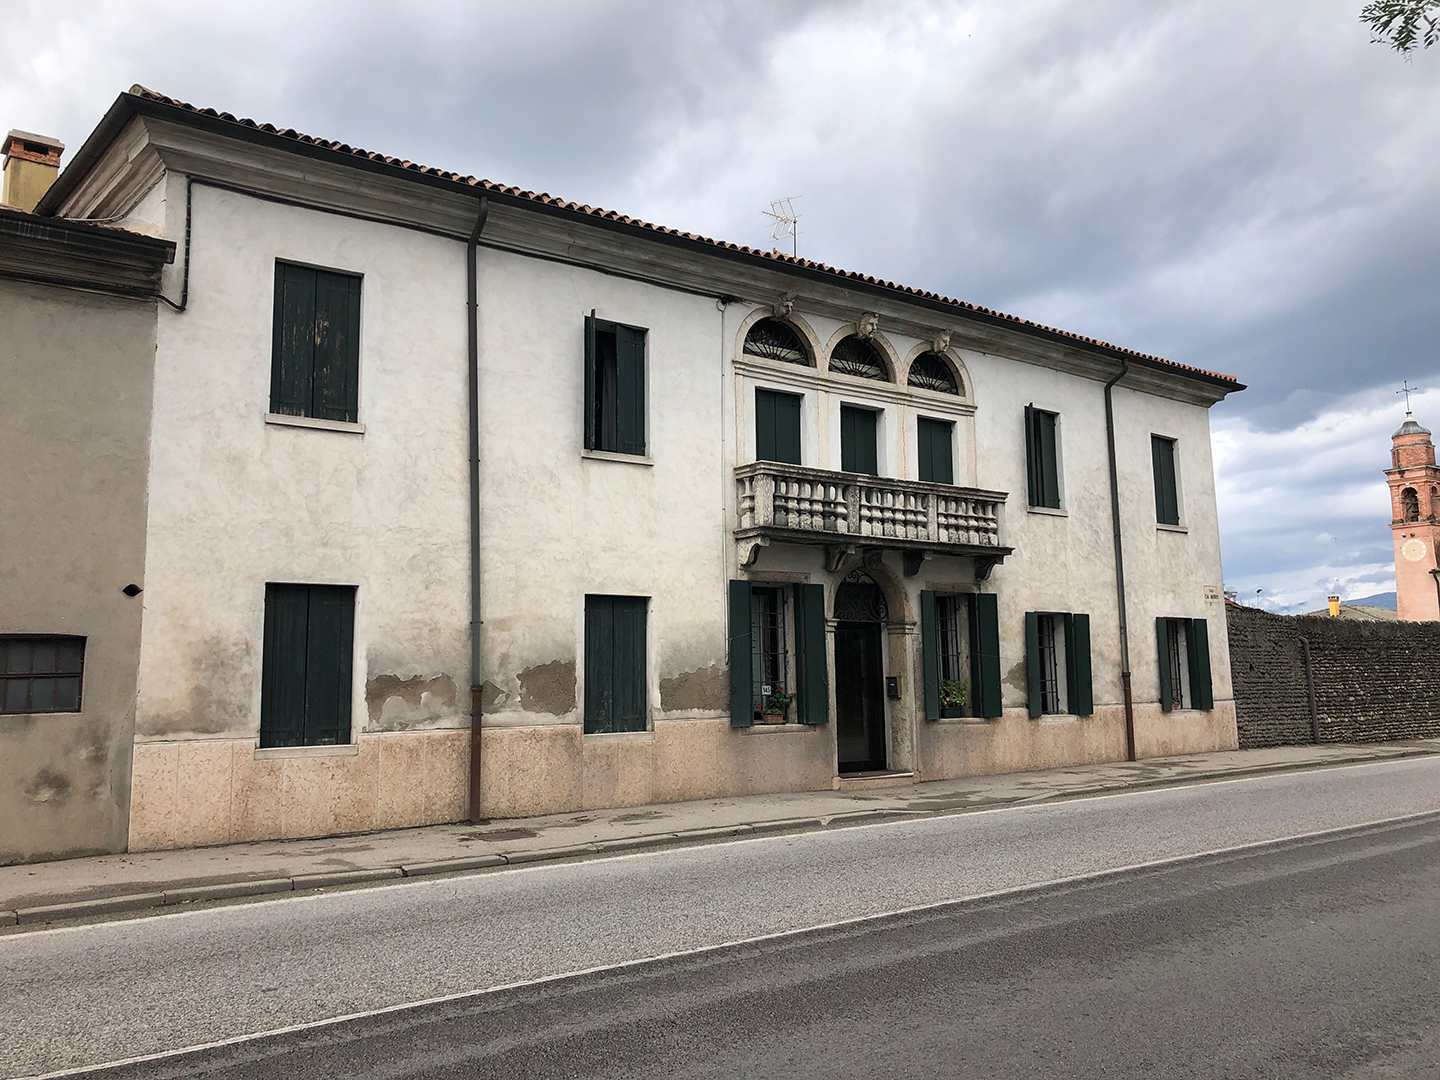 Villa Cà Moro con cappella del SS. Redentore (villa) - Cittadella (PD)  (XVII, metà; XVII, metà)